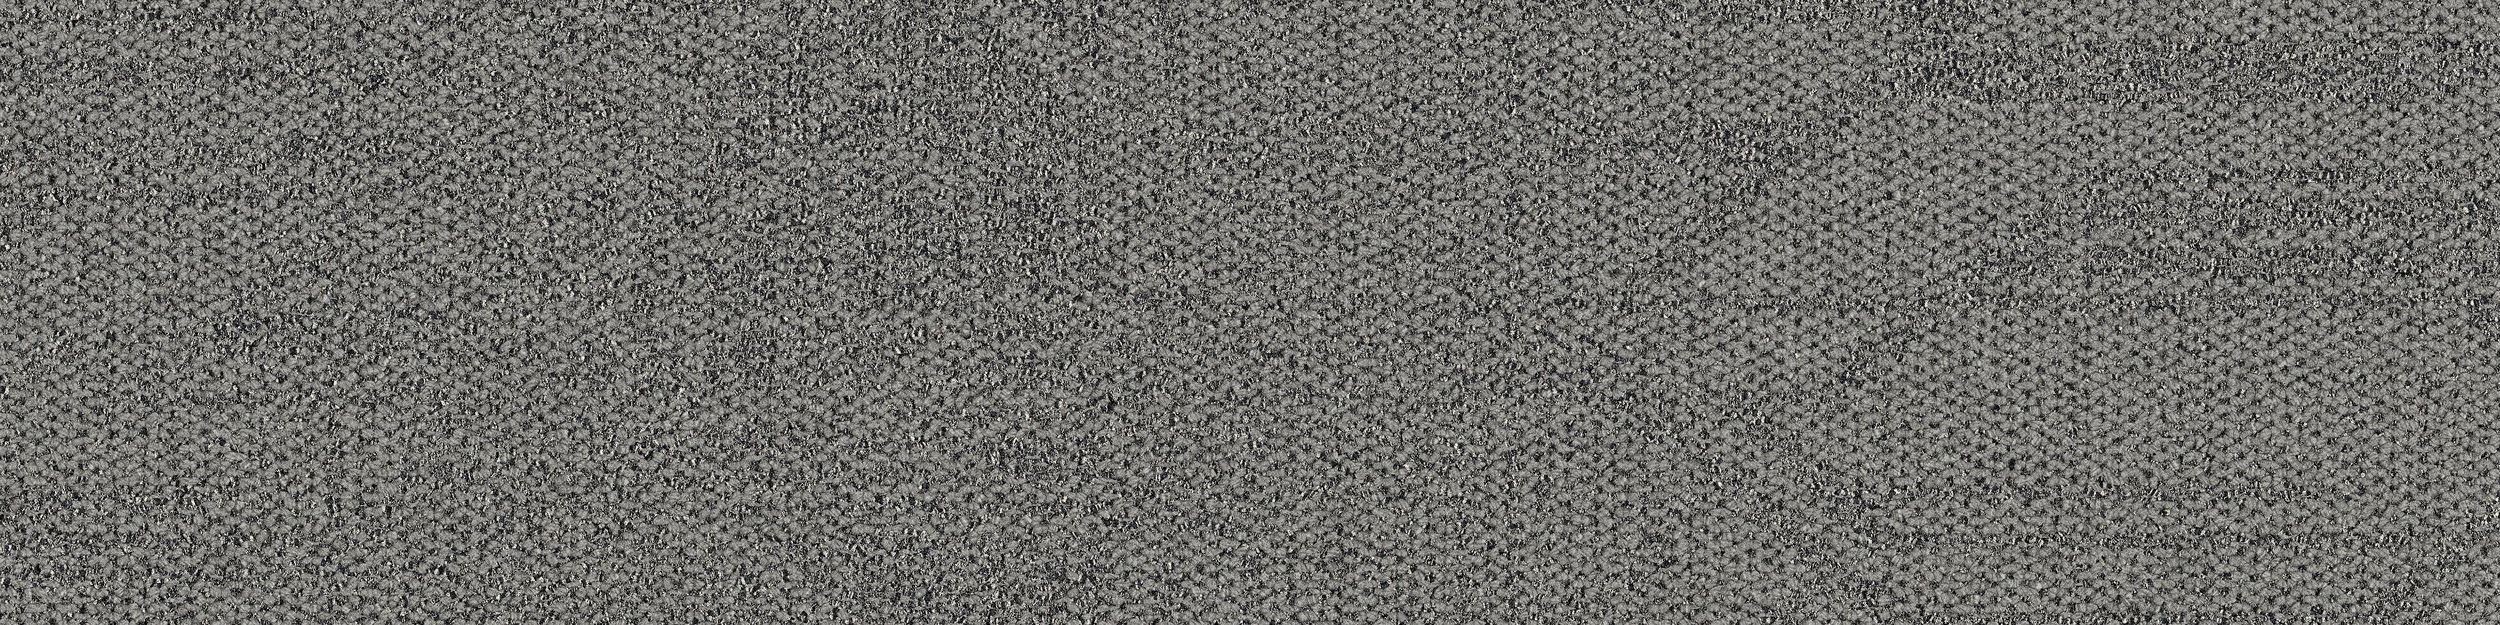 Open Air 411 Carpet Tile In Flannel numéro d’image 2